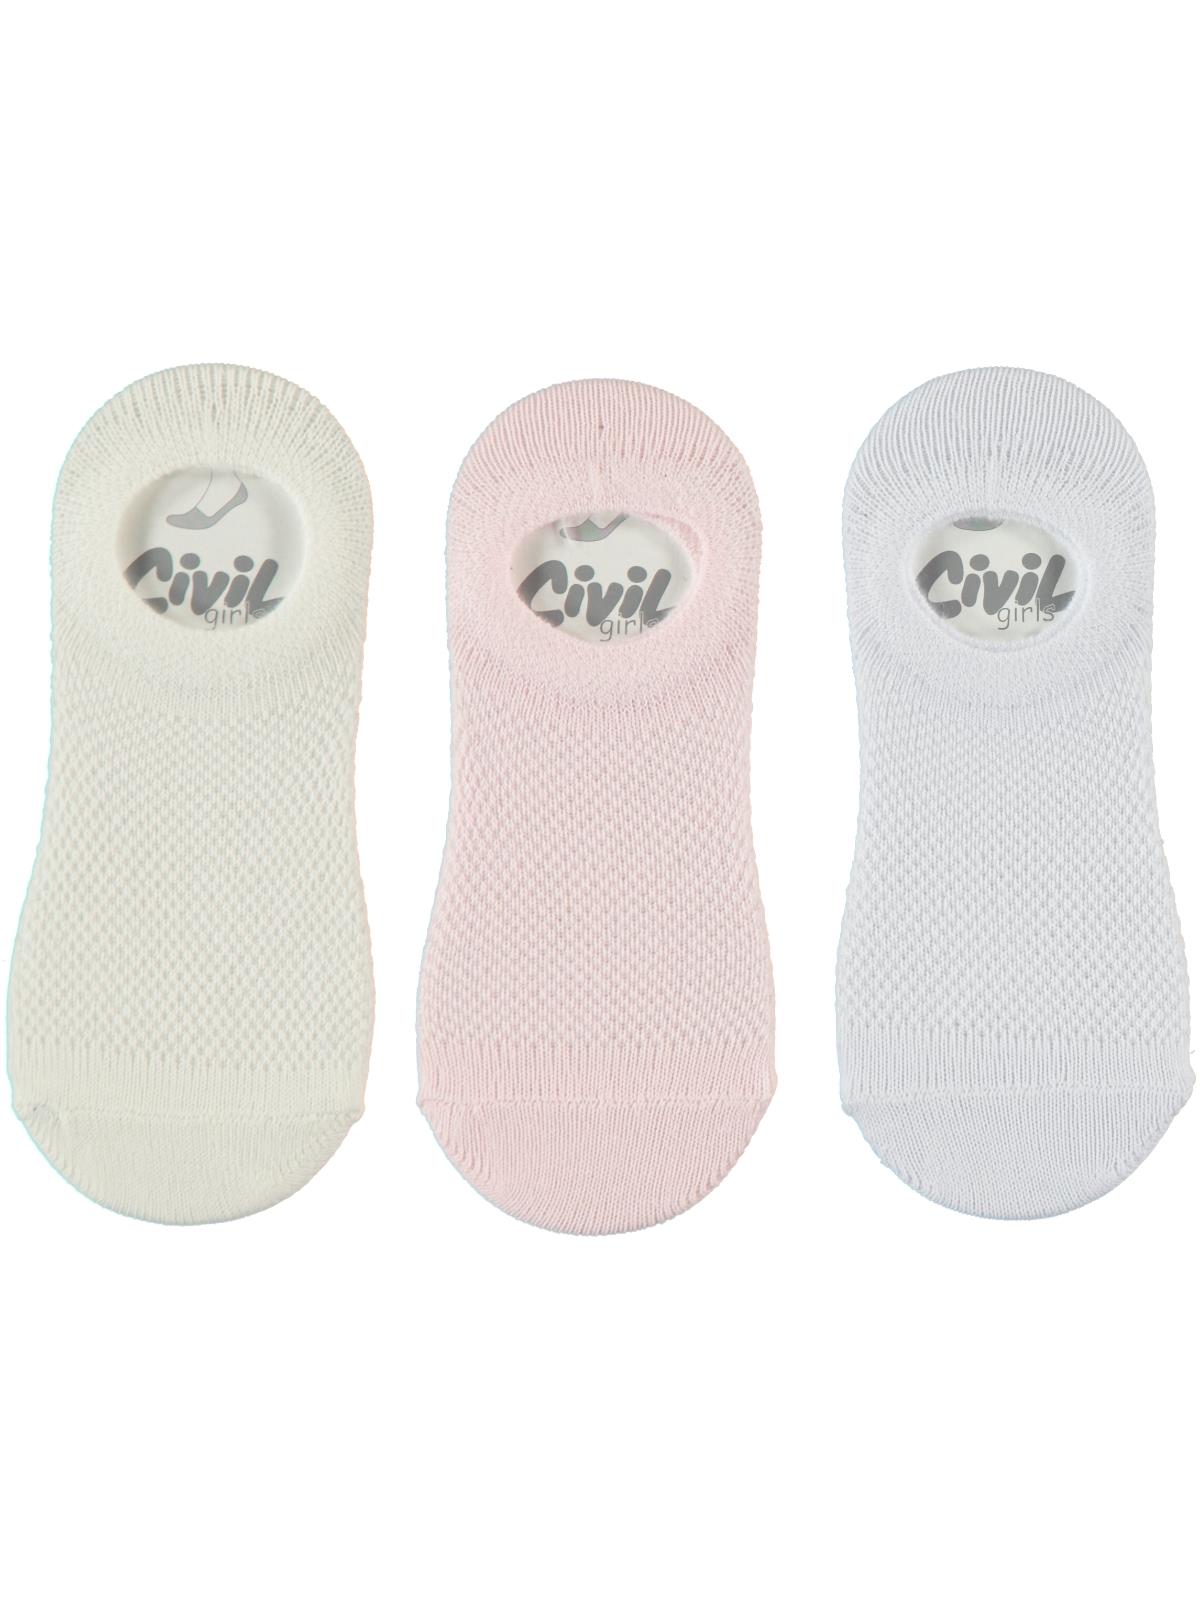 Civil Girls Kız Çocuk 3'lü Babet Çorap 2-12 Yaş Pembe